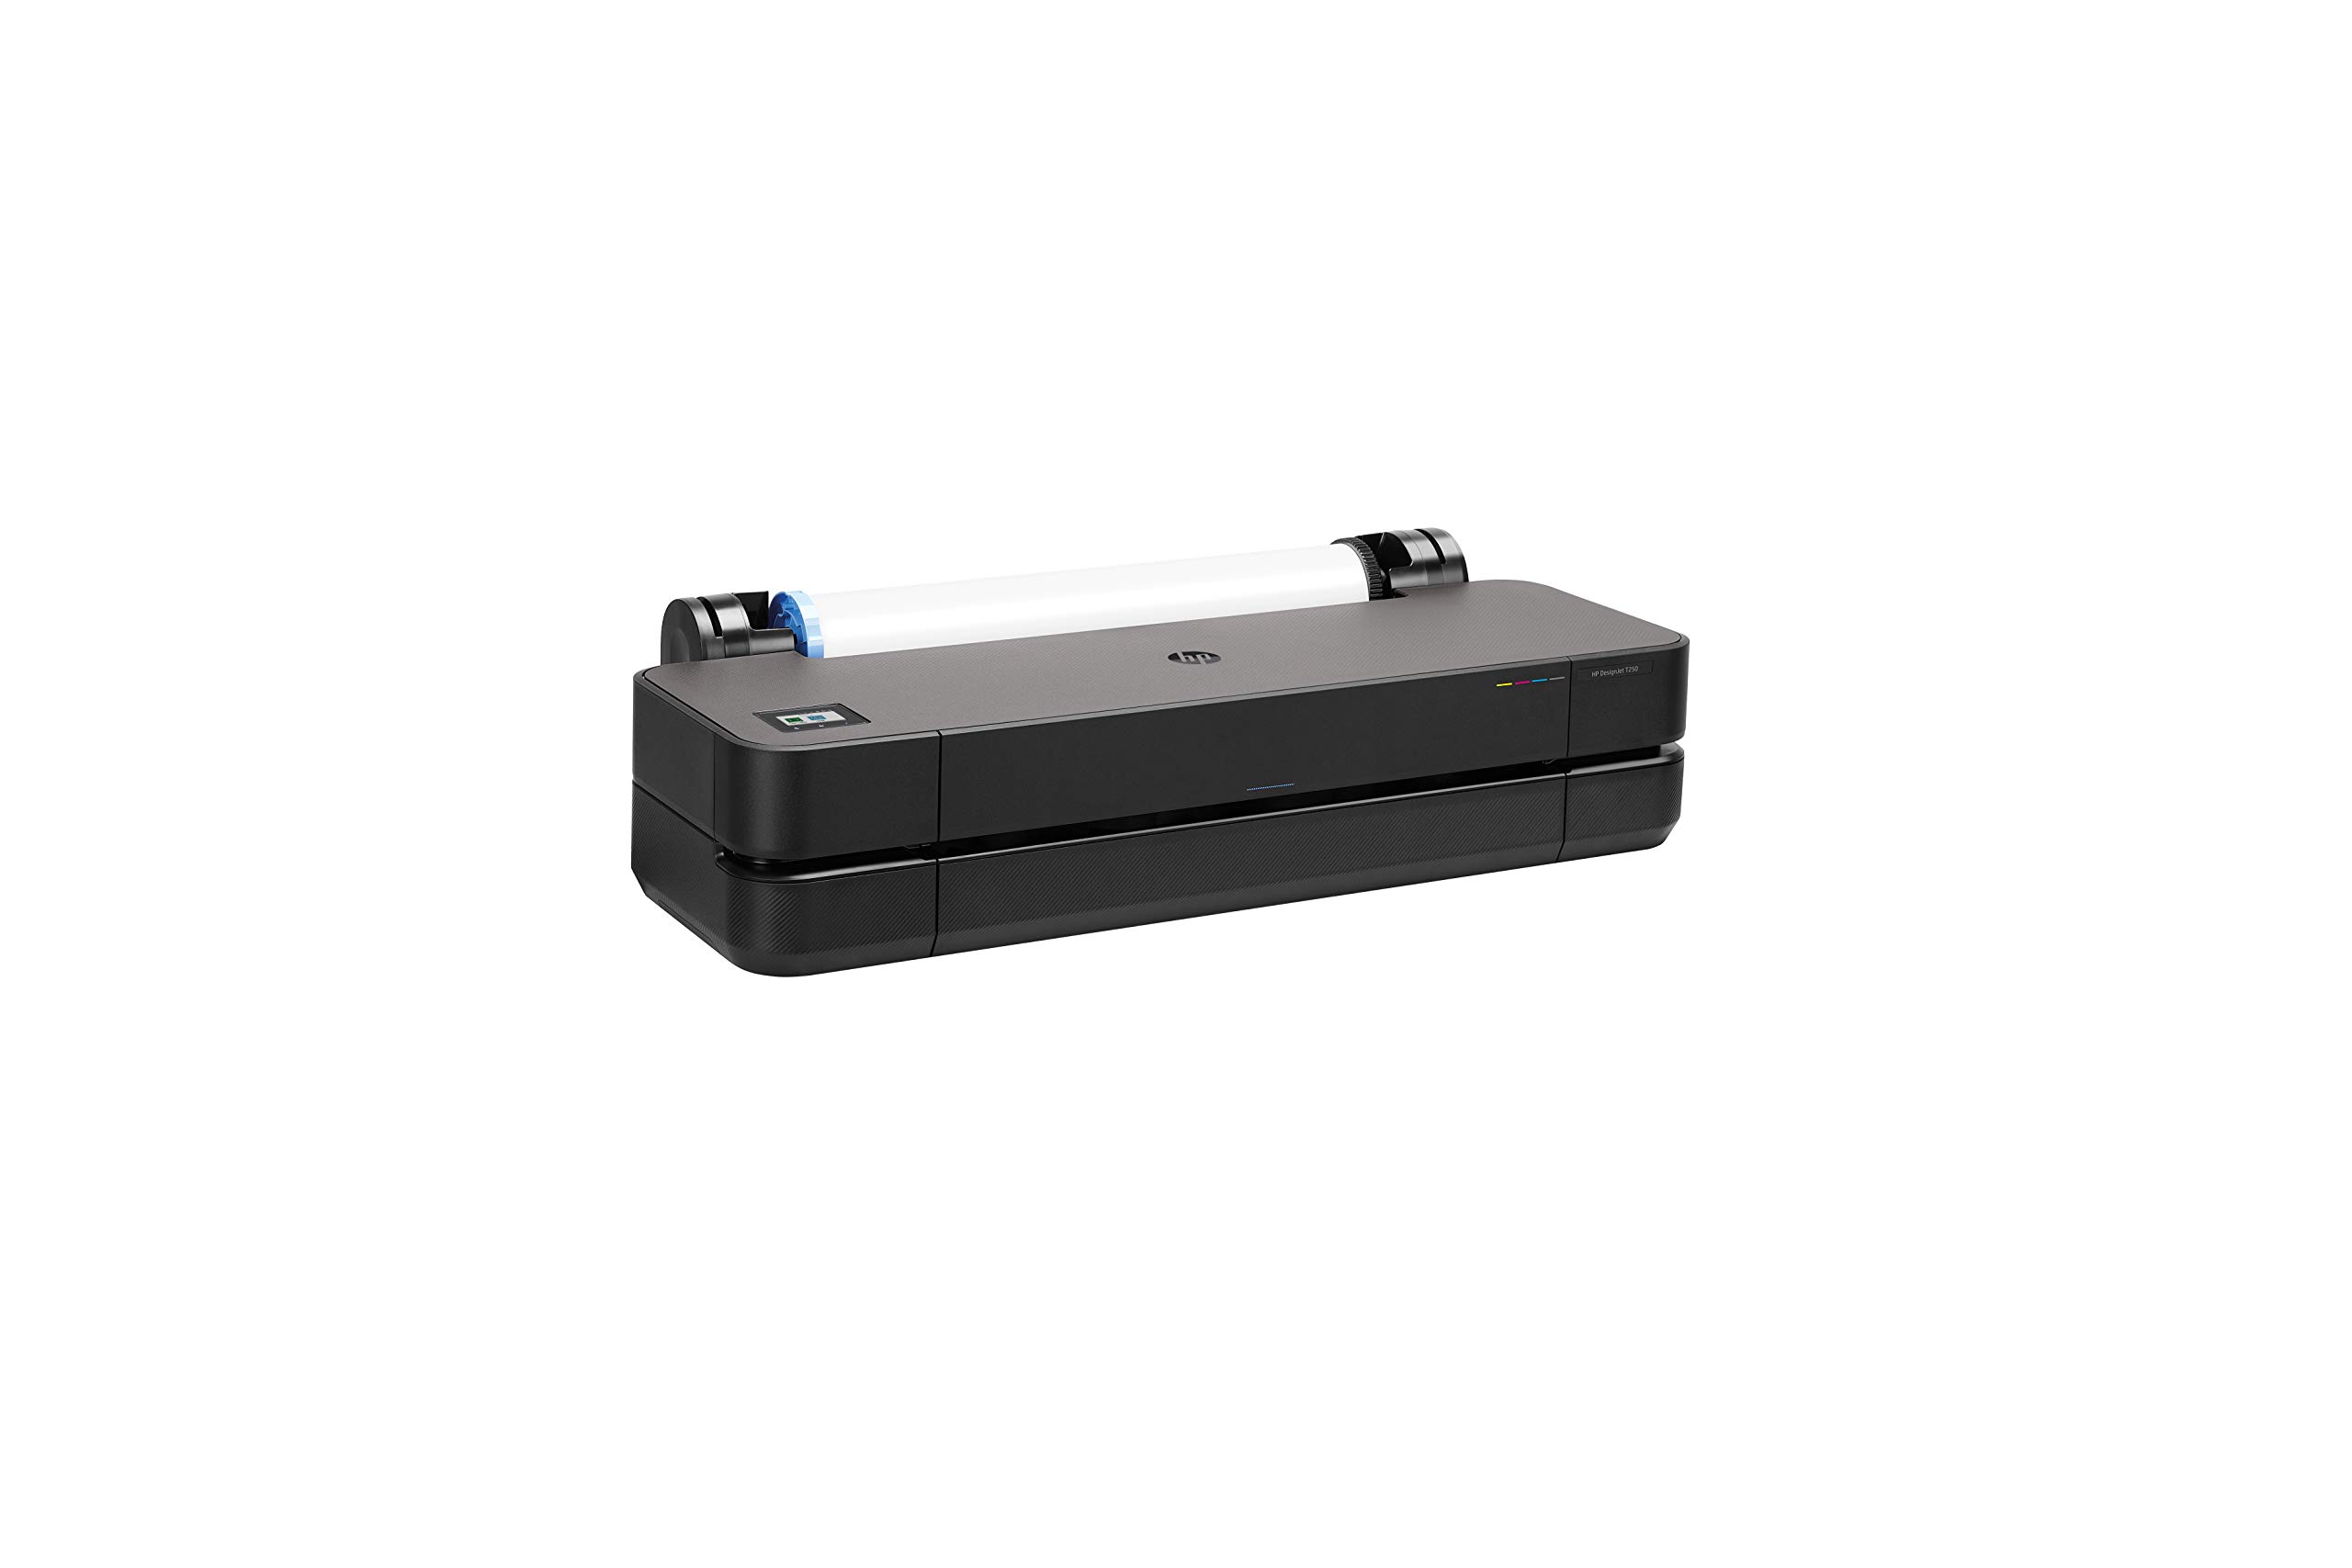 DesignJet T650 Printer series